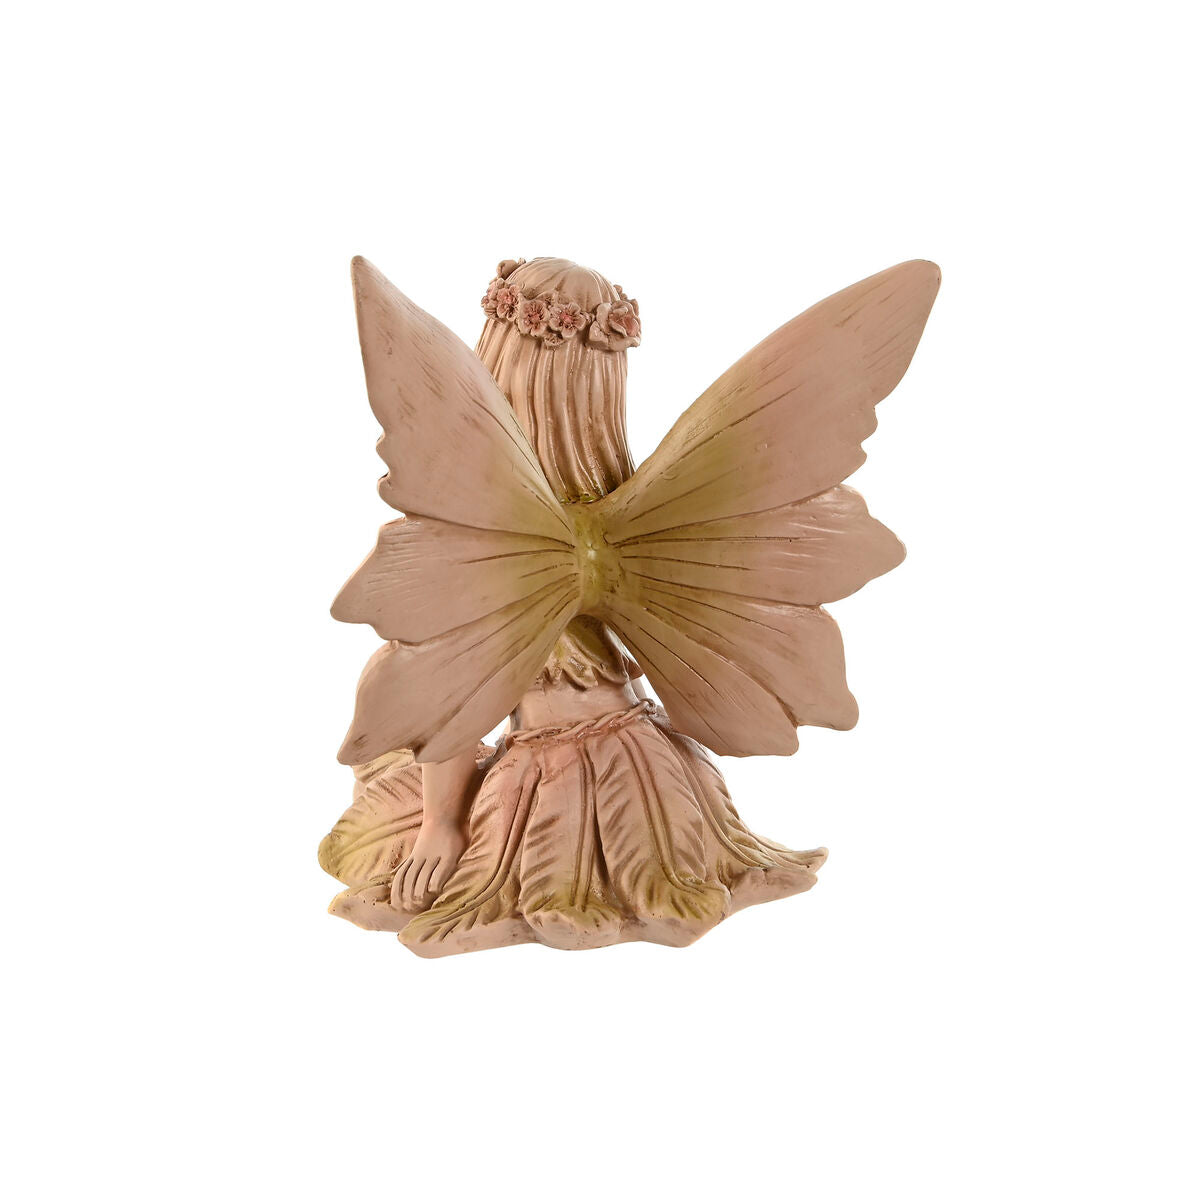 Decorative Figure Home ESPRIT Brown Fairy 22,5 x 20 x 23 cm (2 Units)